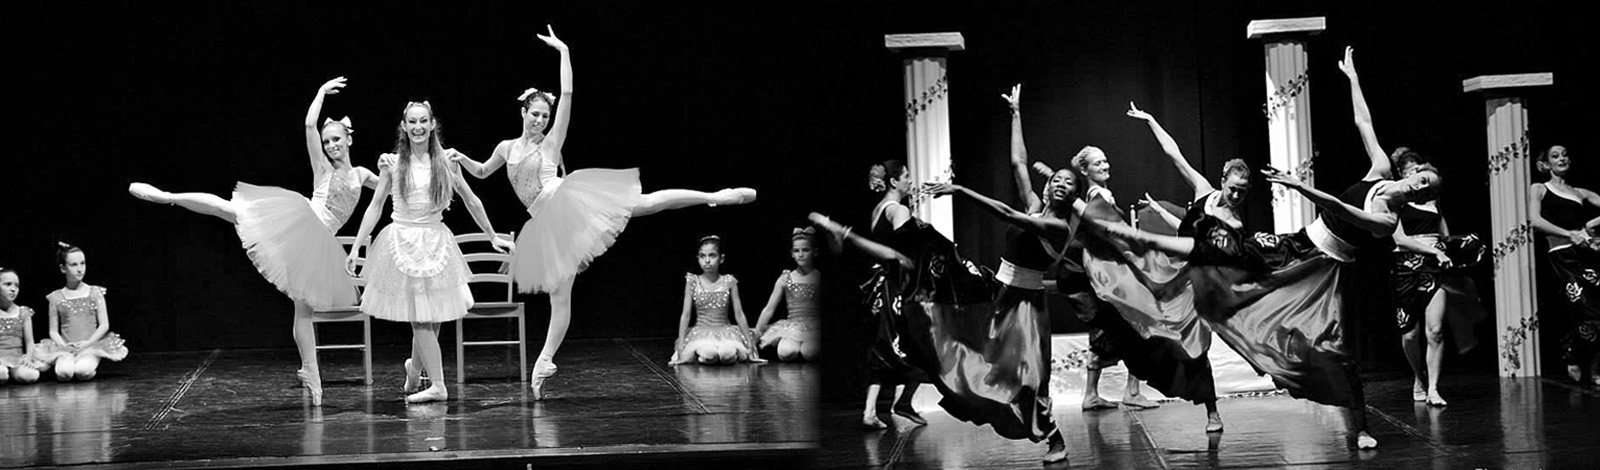 tai ballet studio - scuola di danza verona